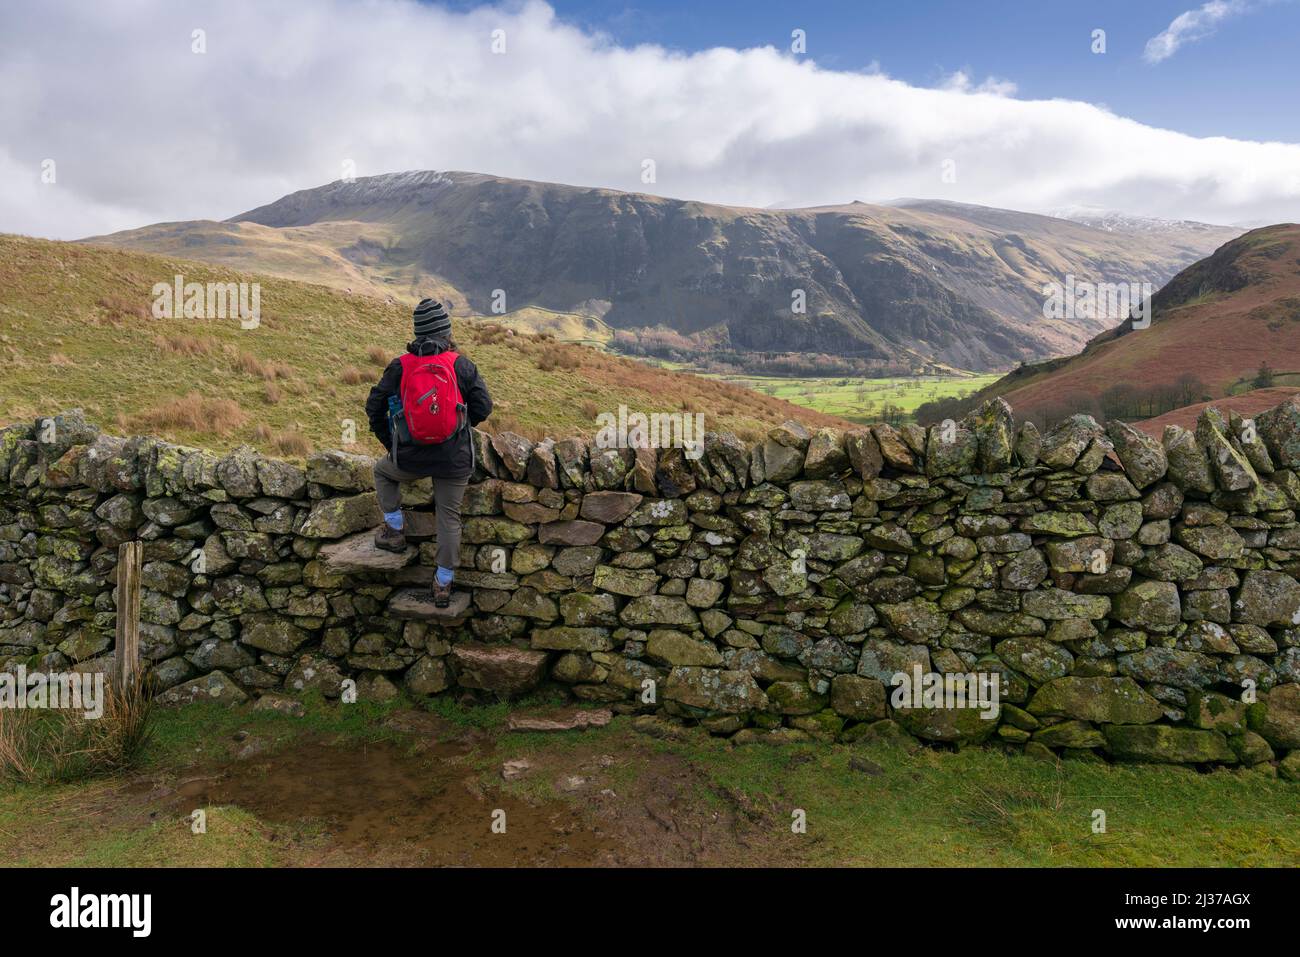 Une femme se tenait sur des marches dans un mur de pierre sèche sur Low Rigg regardant la vue de Clough Head et de St Johns dans la vallée dans le parc national de English Lake District, Cumbria, Angleterre. Banque D'Images